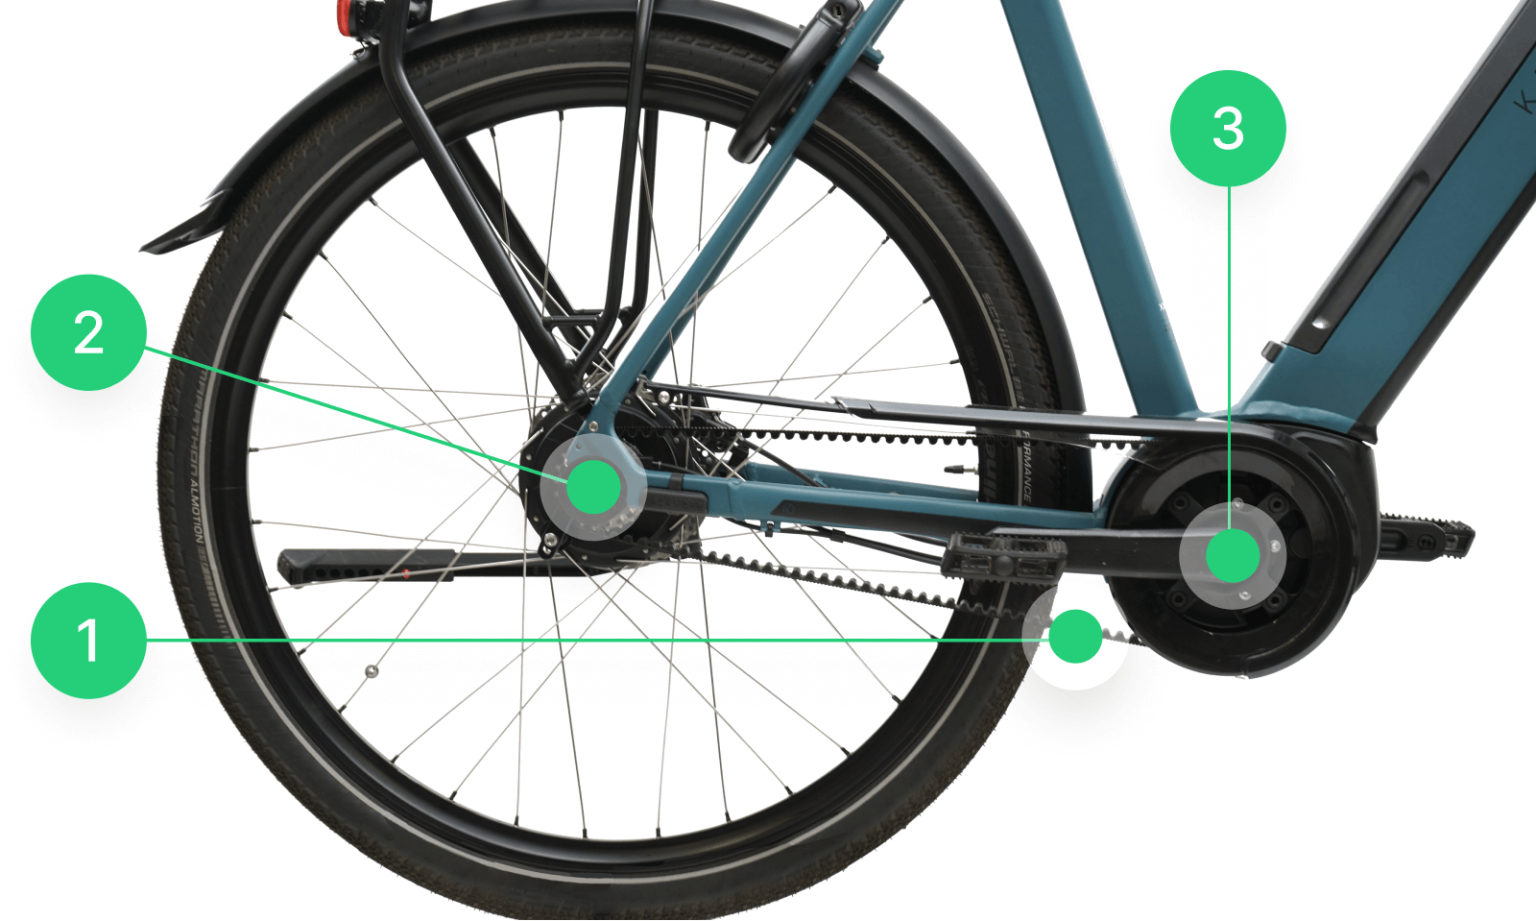 Ähnlich wie beim herkömmlichen Antrieb, besteht der Riemenantrieb am E-Bike aus dem Riemen (1), der hinteren Riemenscheibe (2) und der vorderen Riemenscheibe (3)